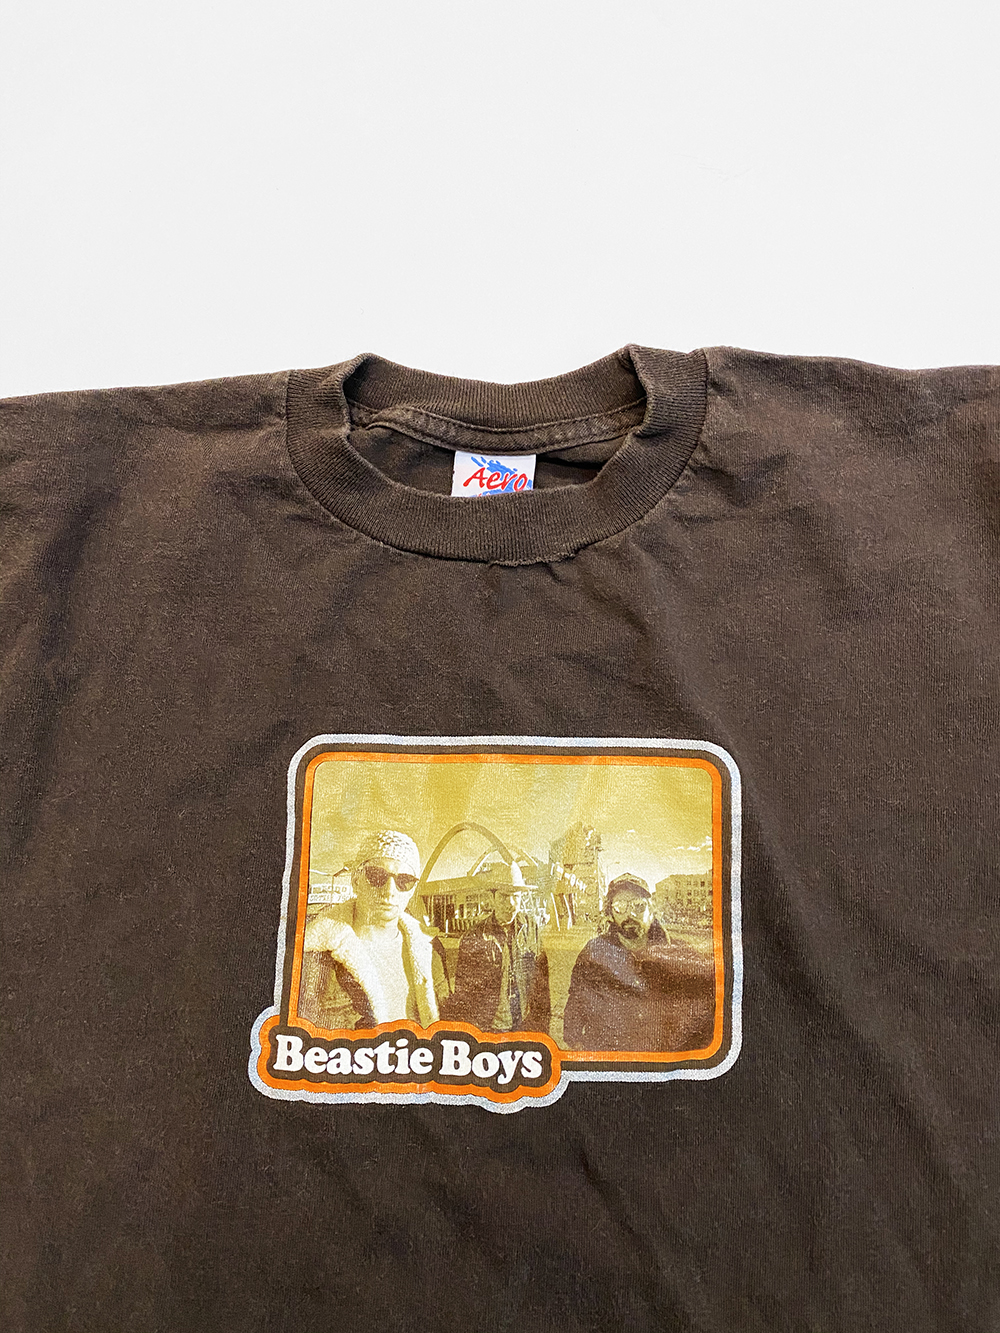 1990 S Beastie Boys Tee Shirt Medium Very Rare Kyc Vintage